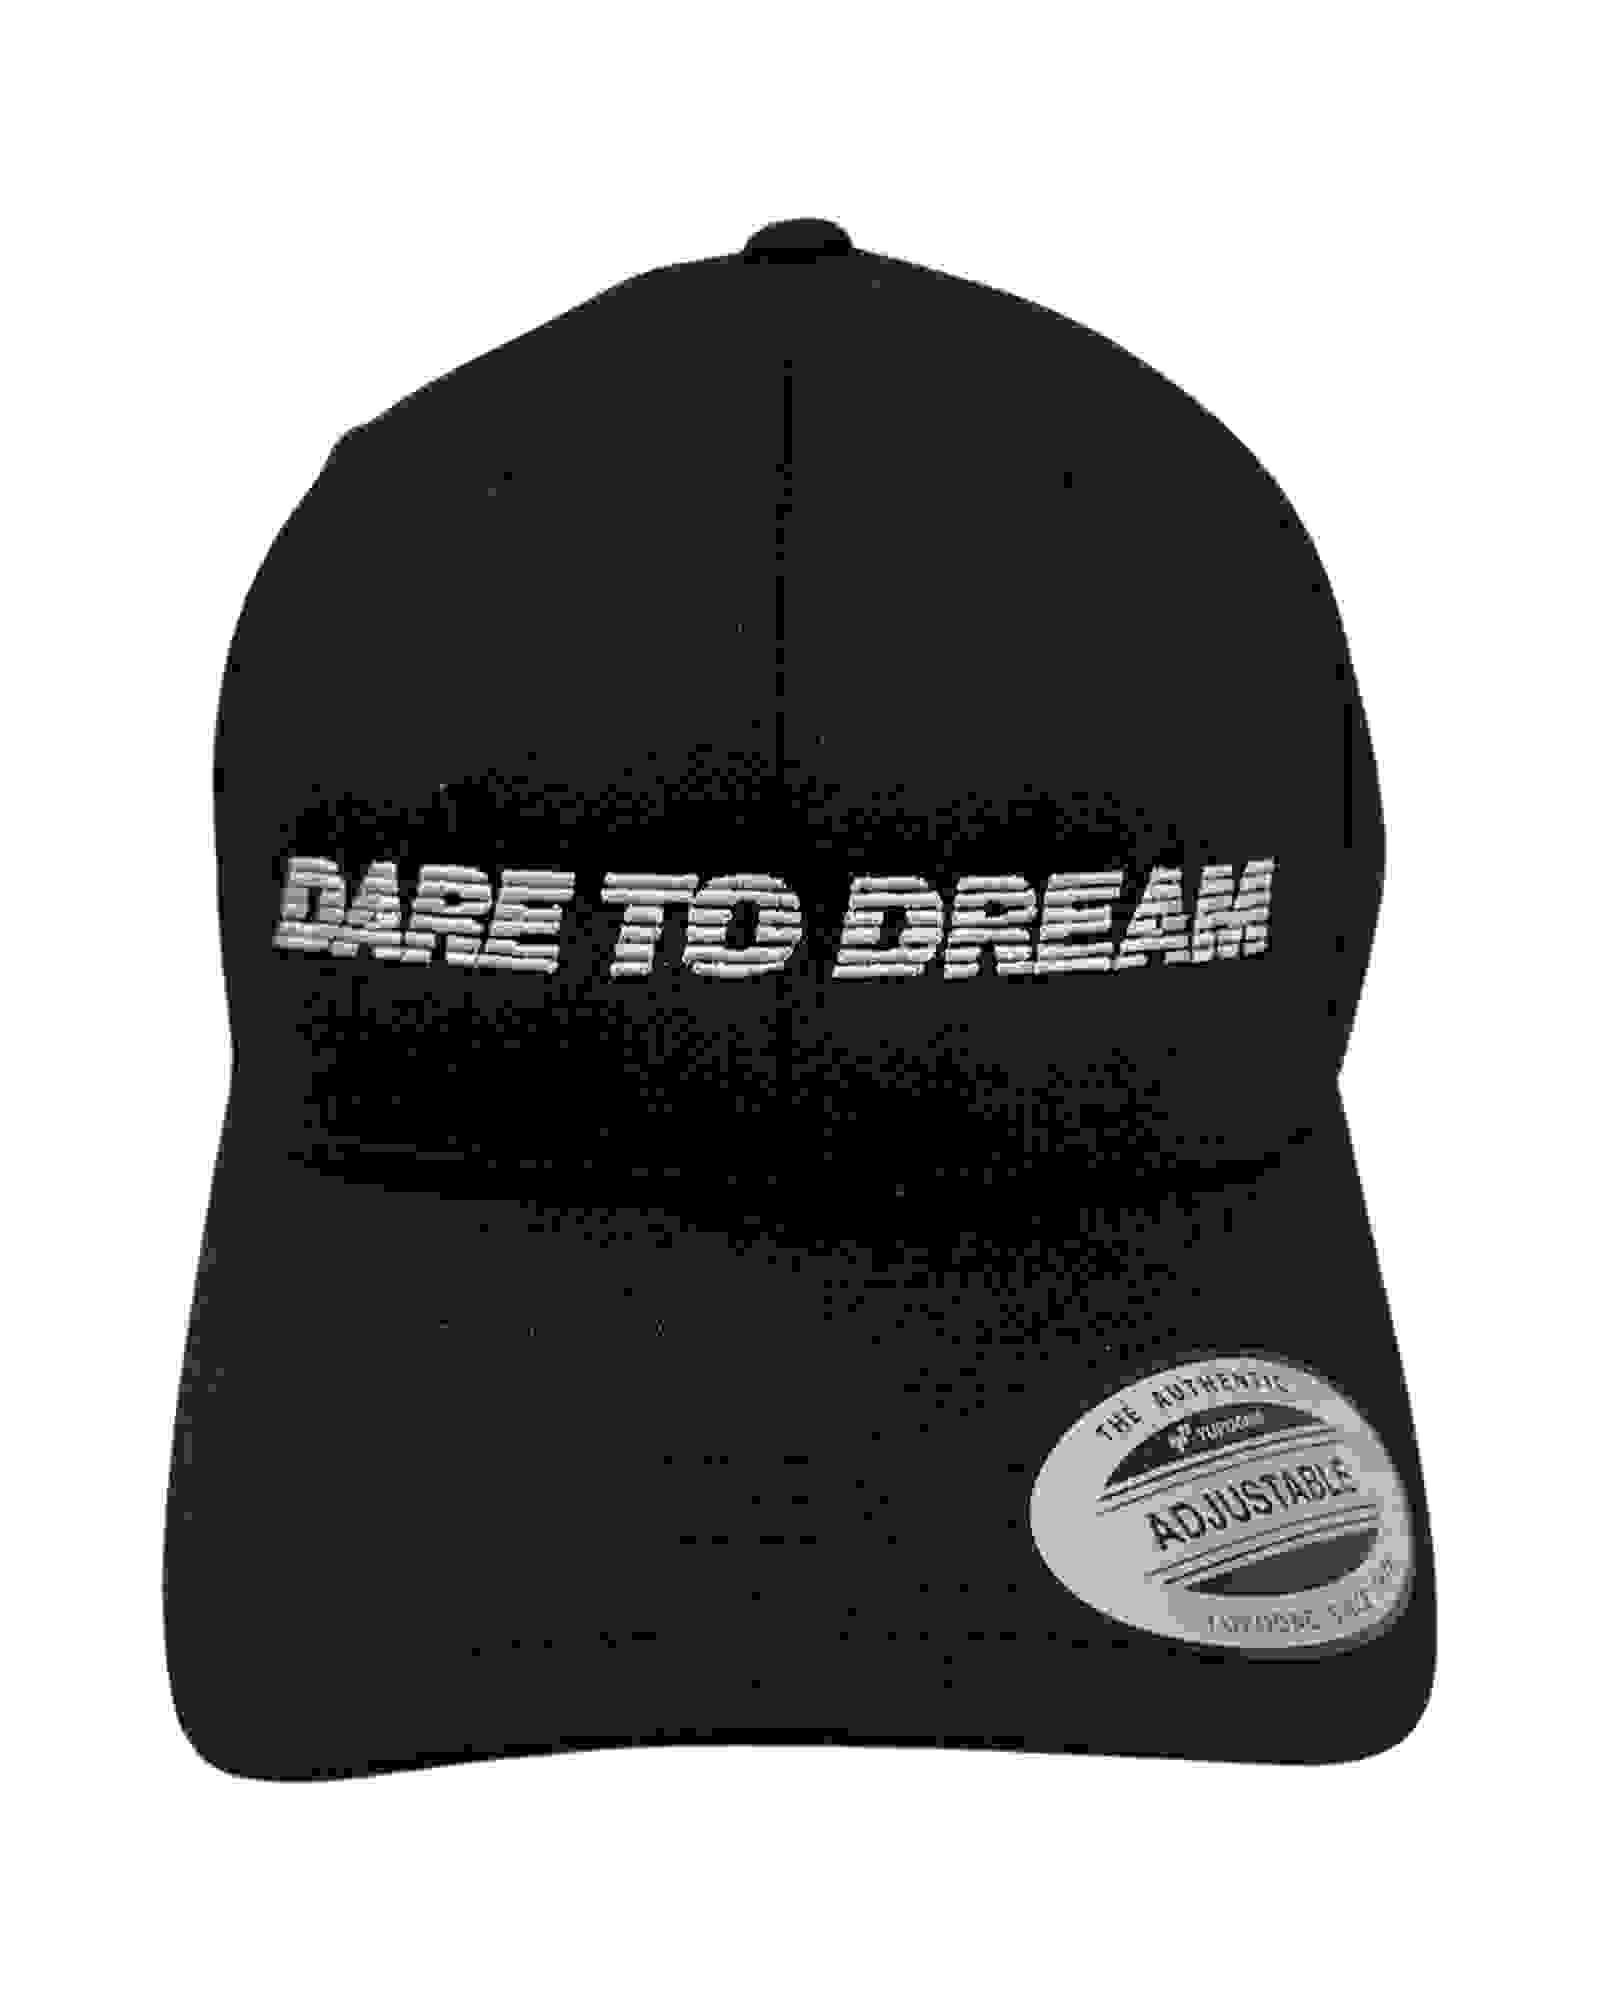 THE SYMBOL Dare To Dream Embroidery Baseball Cap Black/Silver